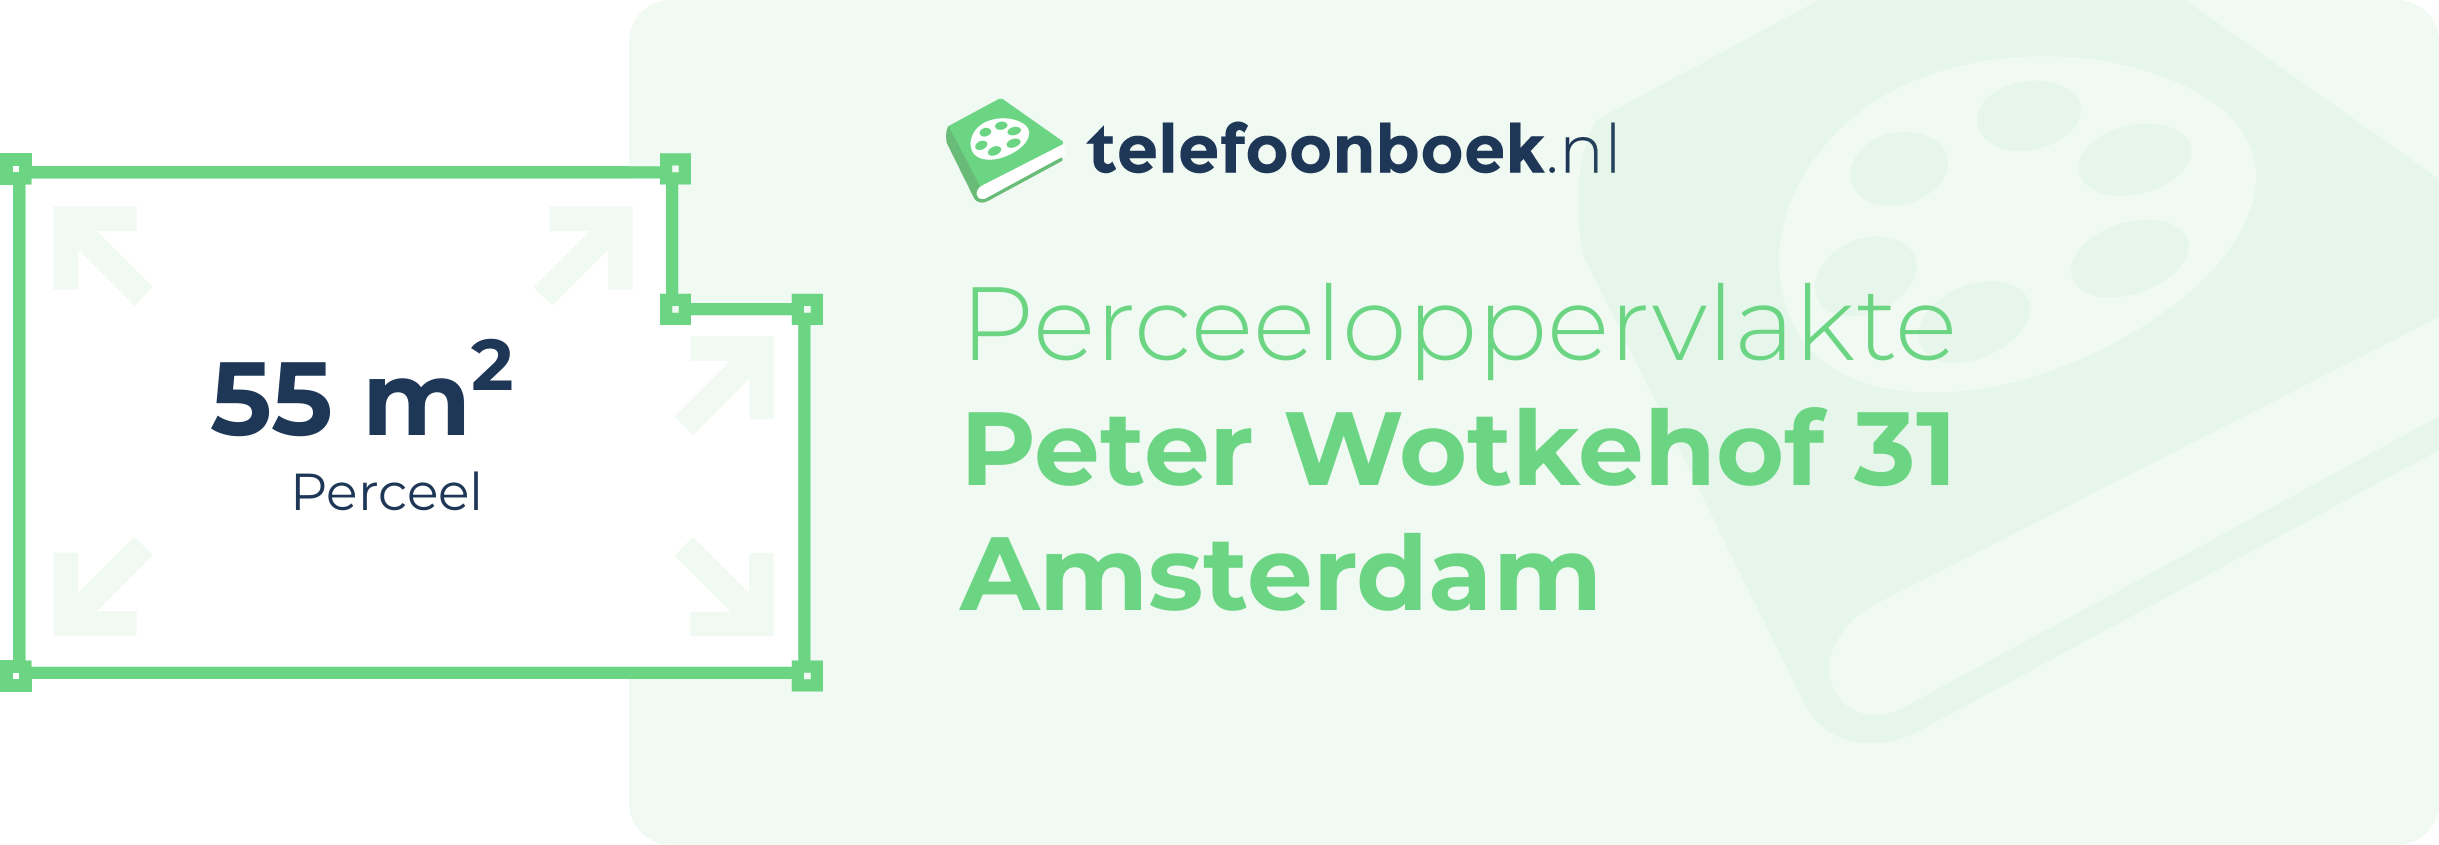 Perceeloppervlakte Peter Wotkehof 31 Amsterdam